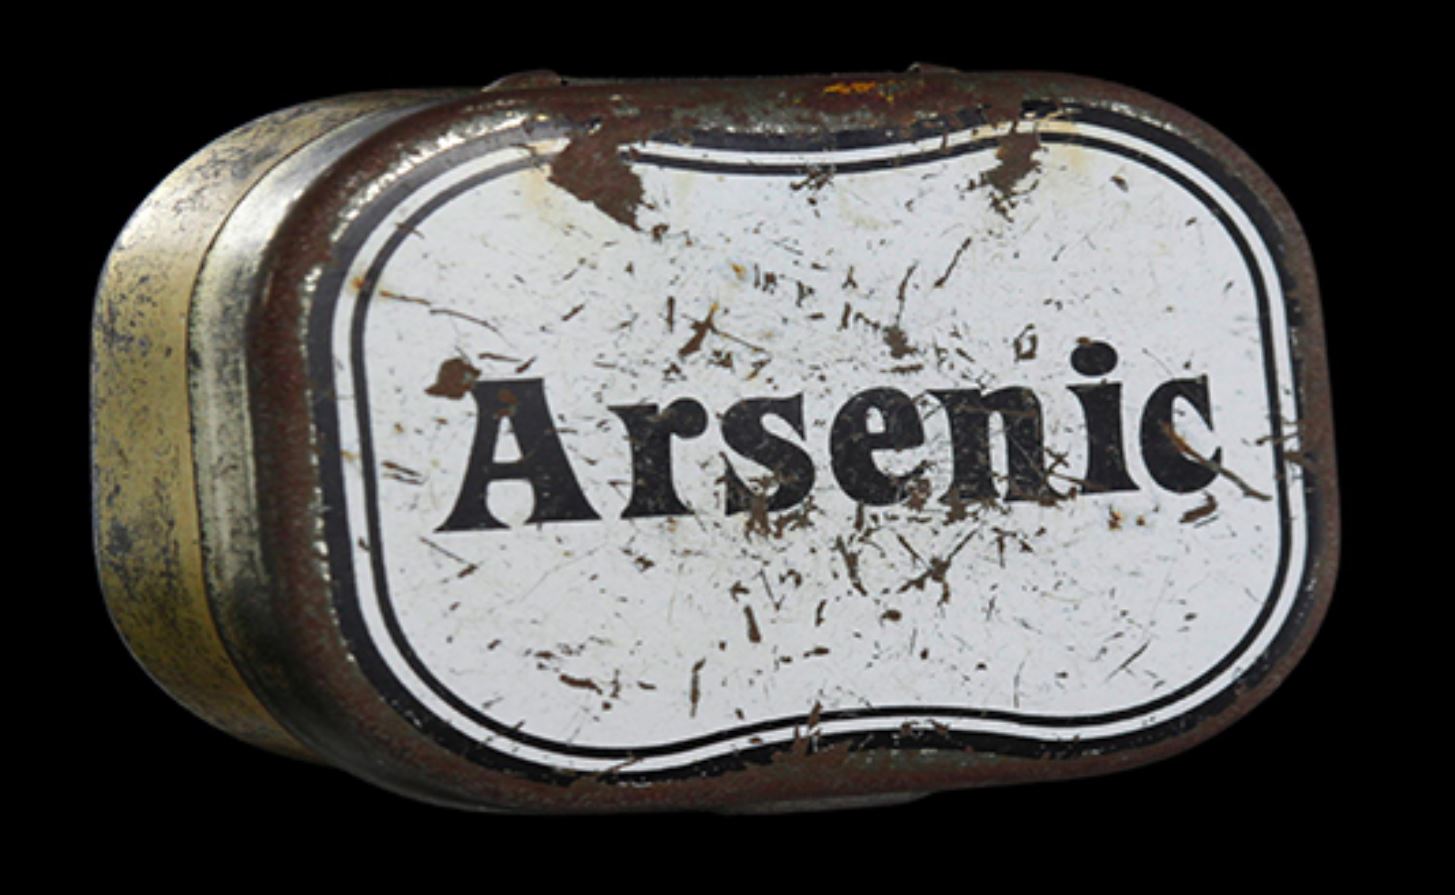 arsenic for tea series